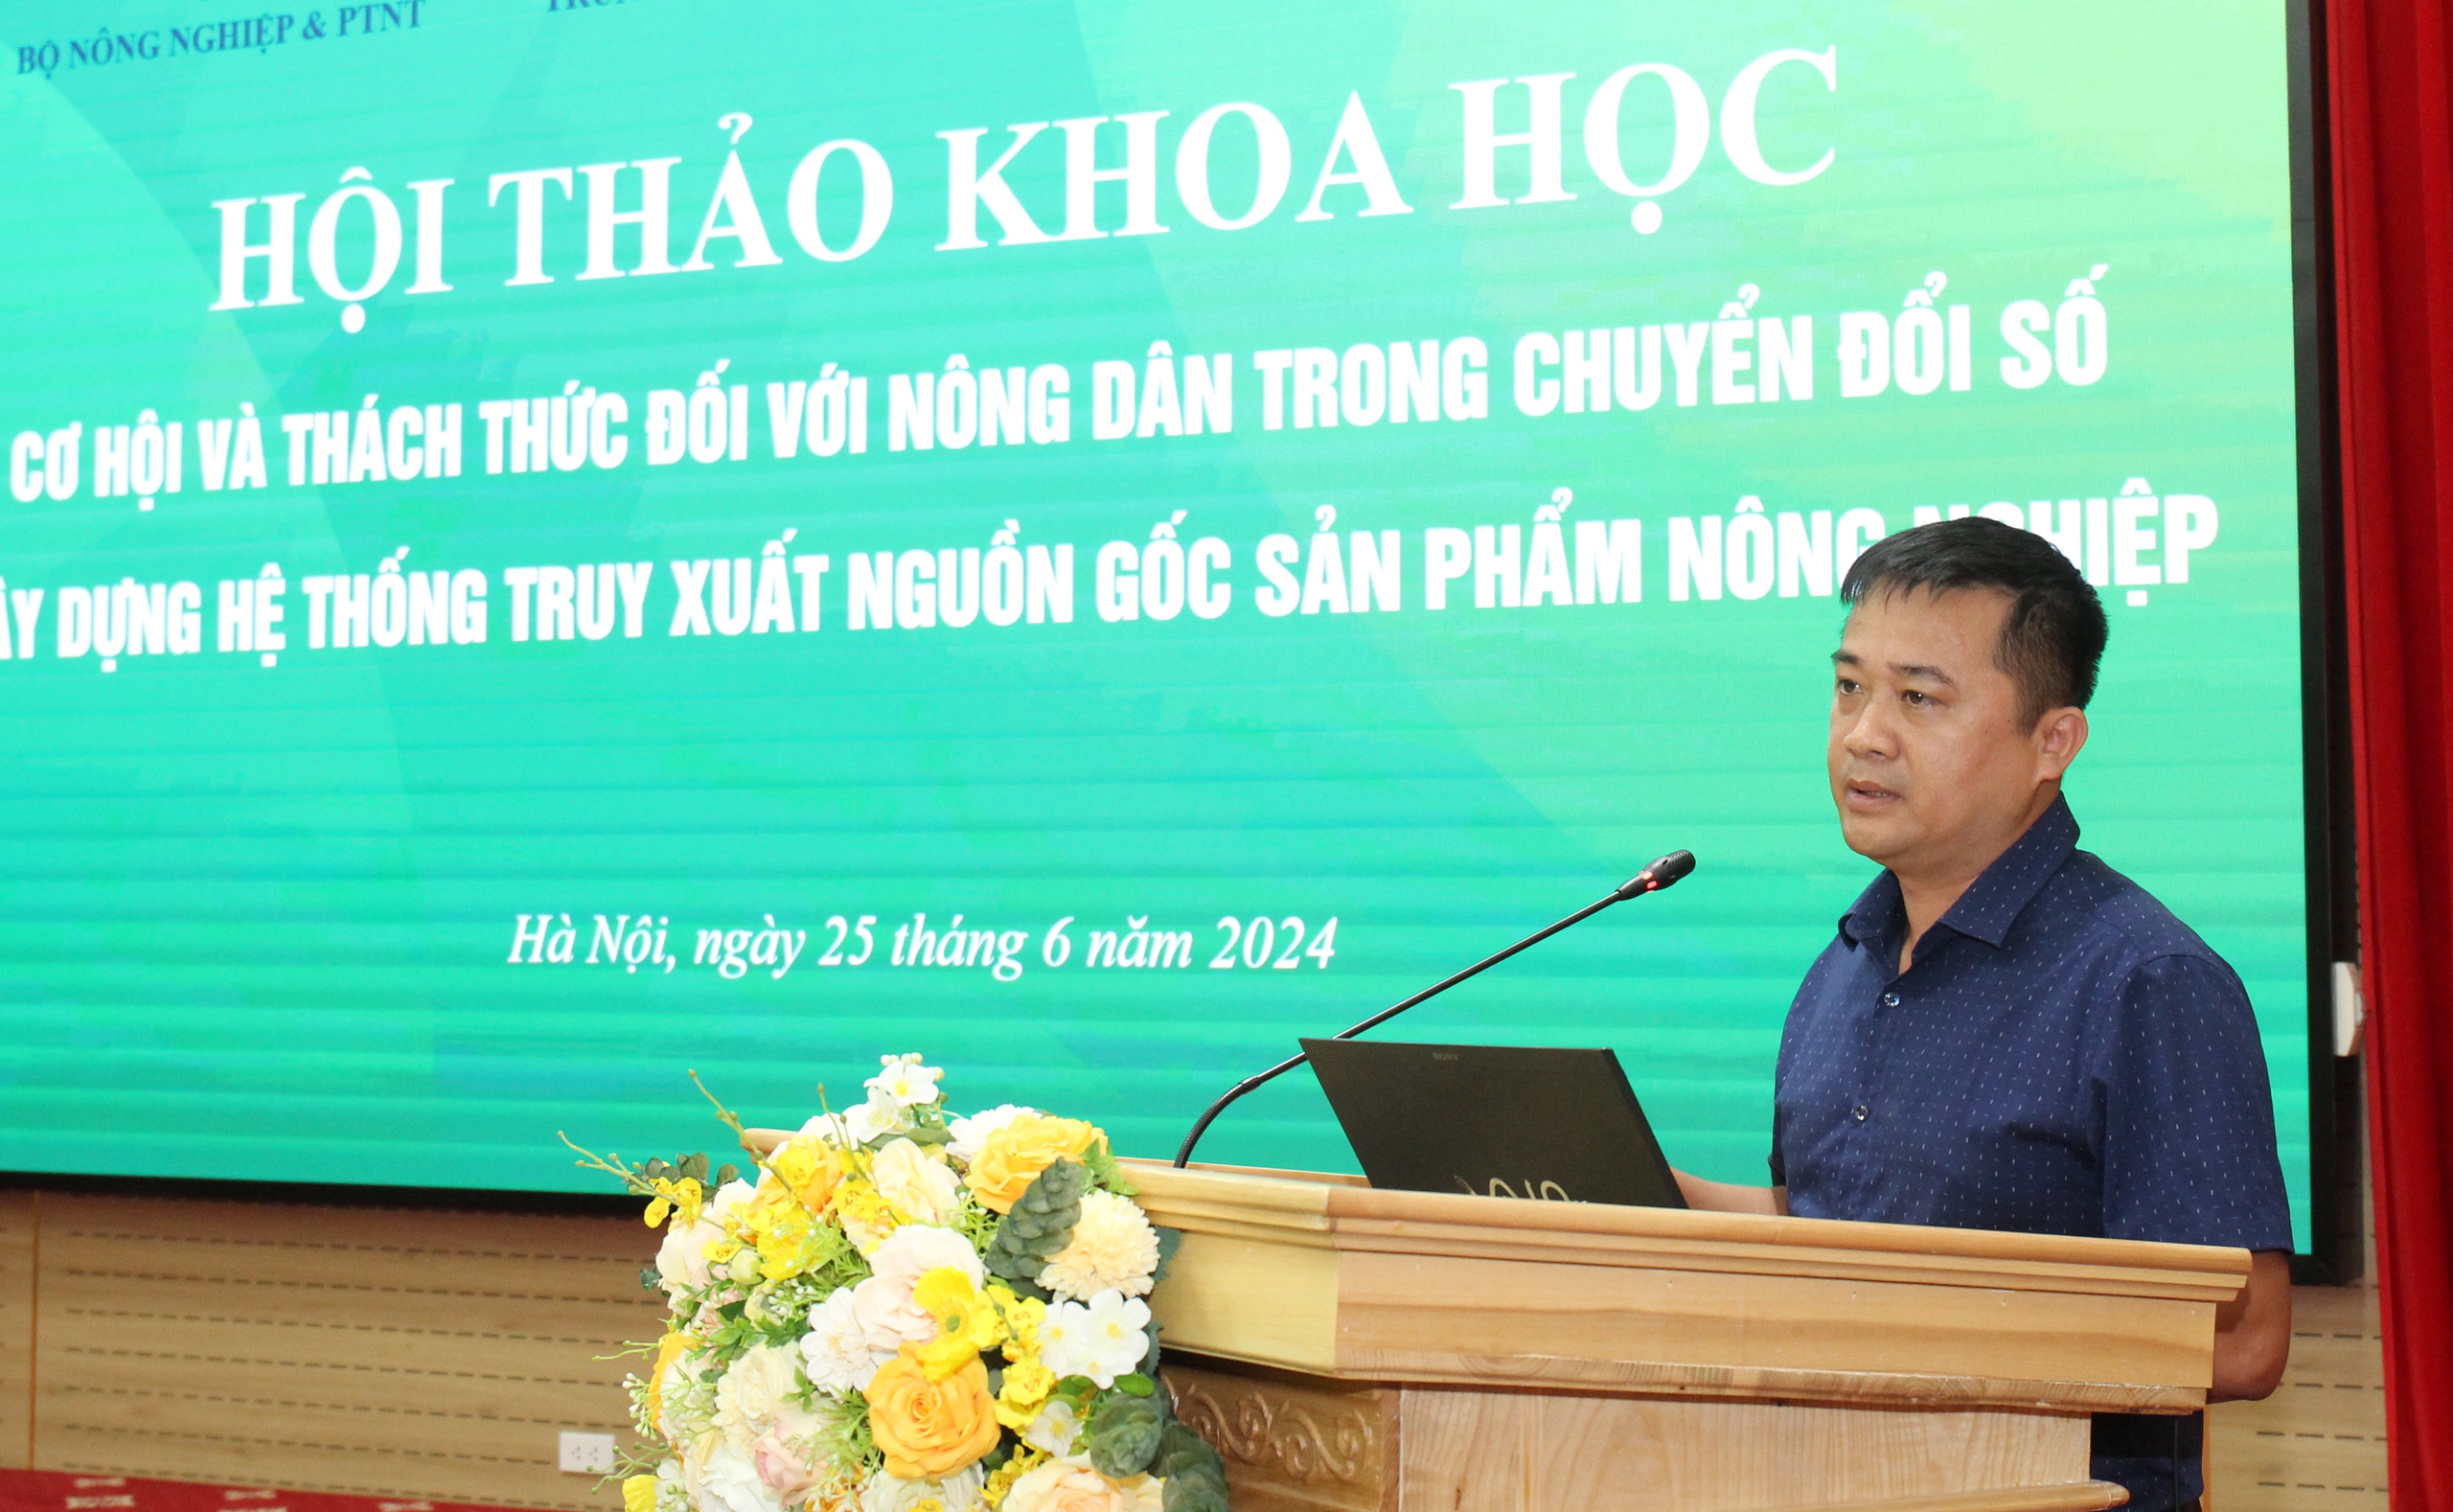 Hội NDVN, Bộ NNPTNT, Bộ KHCN tổ chức Hội thảo khoa học cơ hội, thách thức đối với nông dân trong chuyển đổi số- Ảnh 6.